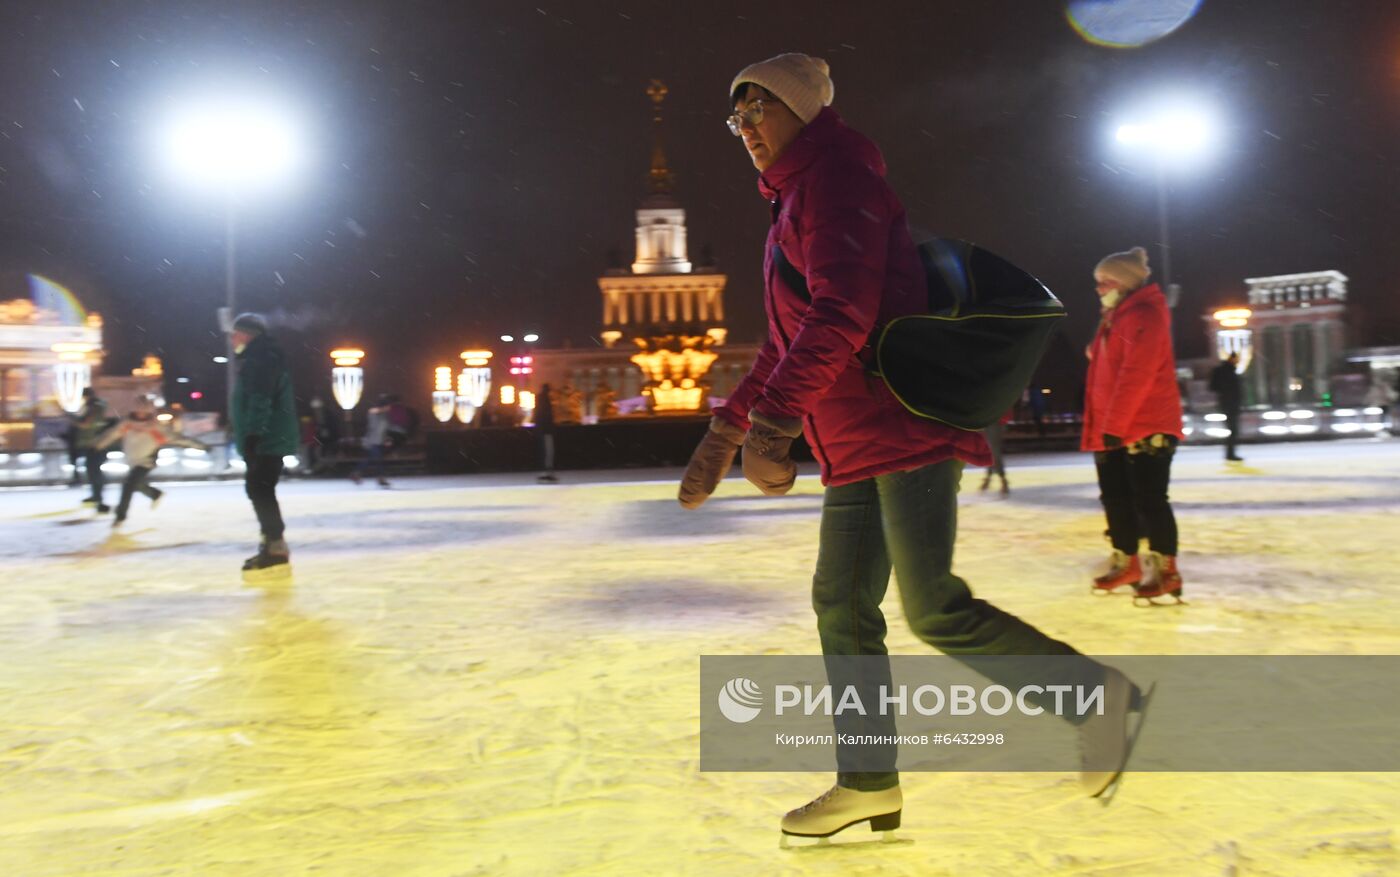 Катание на коньках в Москве в новогодние праздники